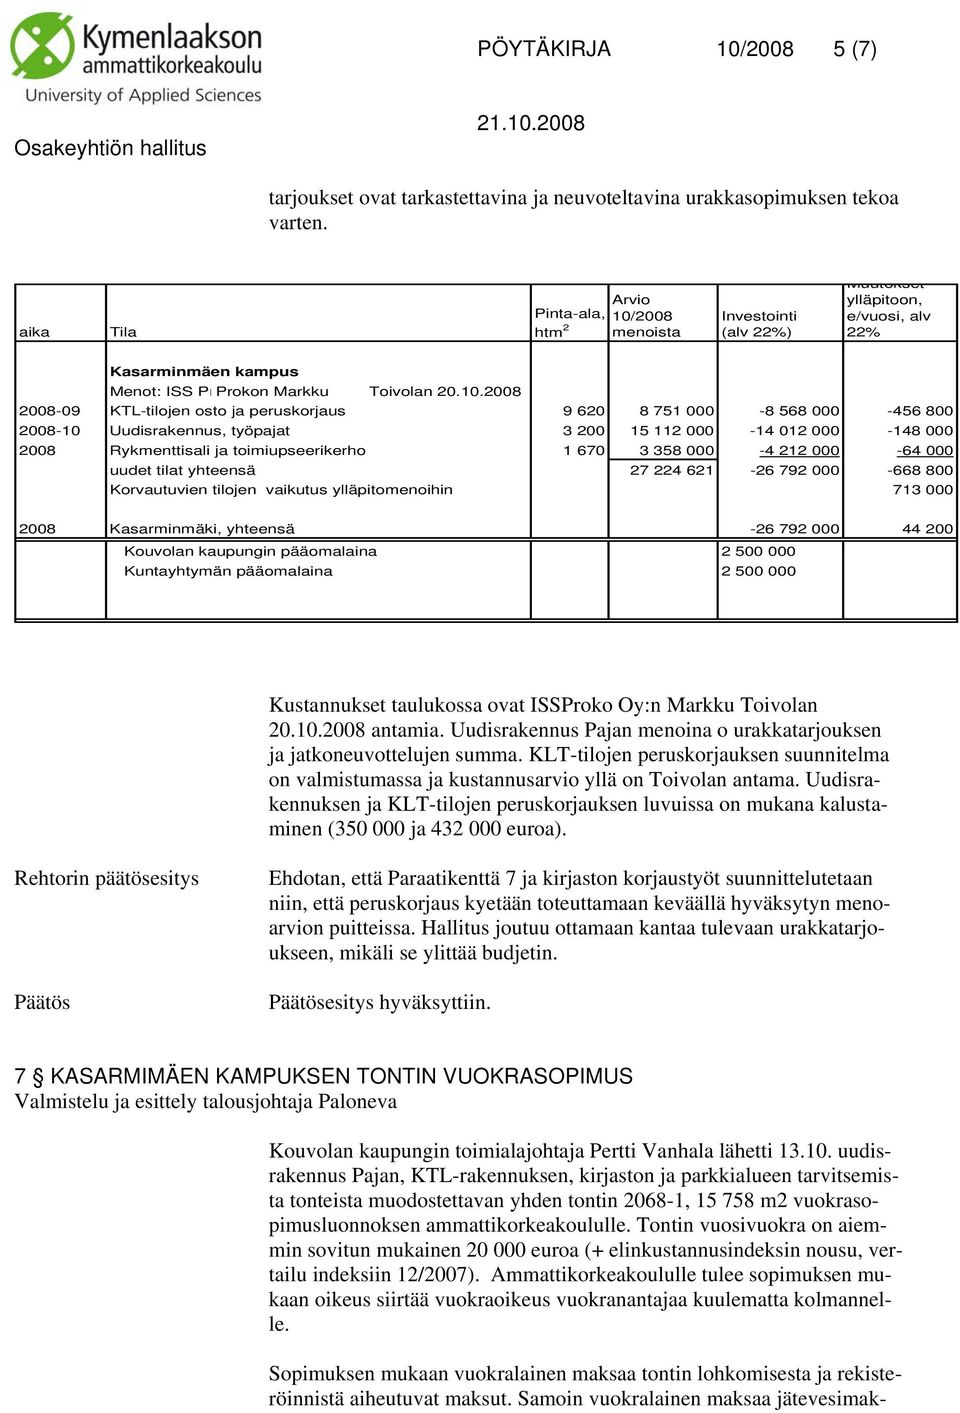 2008 menoista Investointi (alv 22%) Muutokset ylläpitoon, e/vuosi, alv 22% Kasarminmäen kampus Menot: ISS PrProkon Markku Toivolan 20.10.